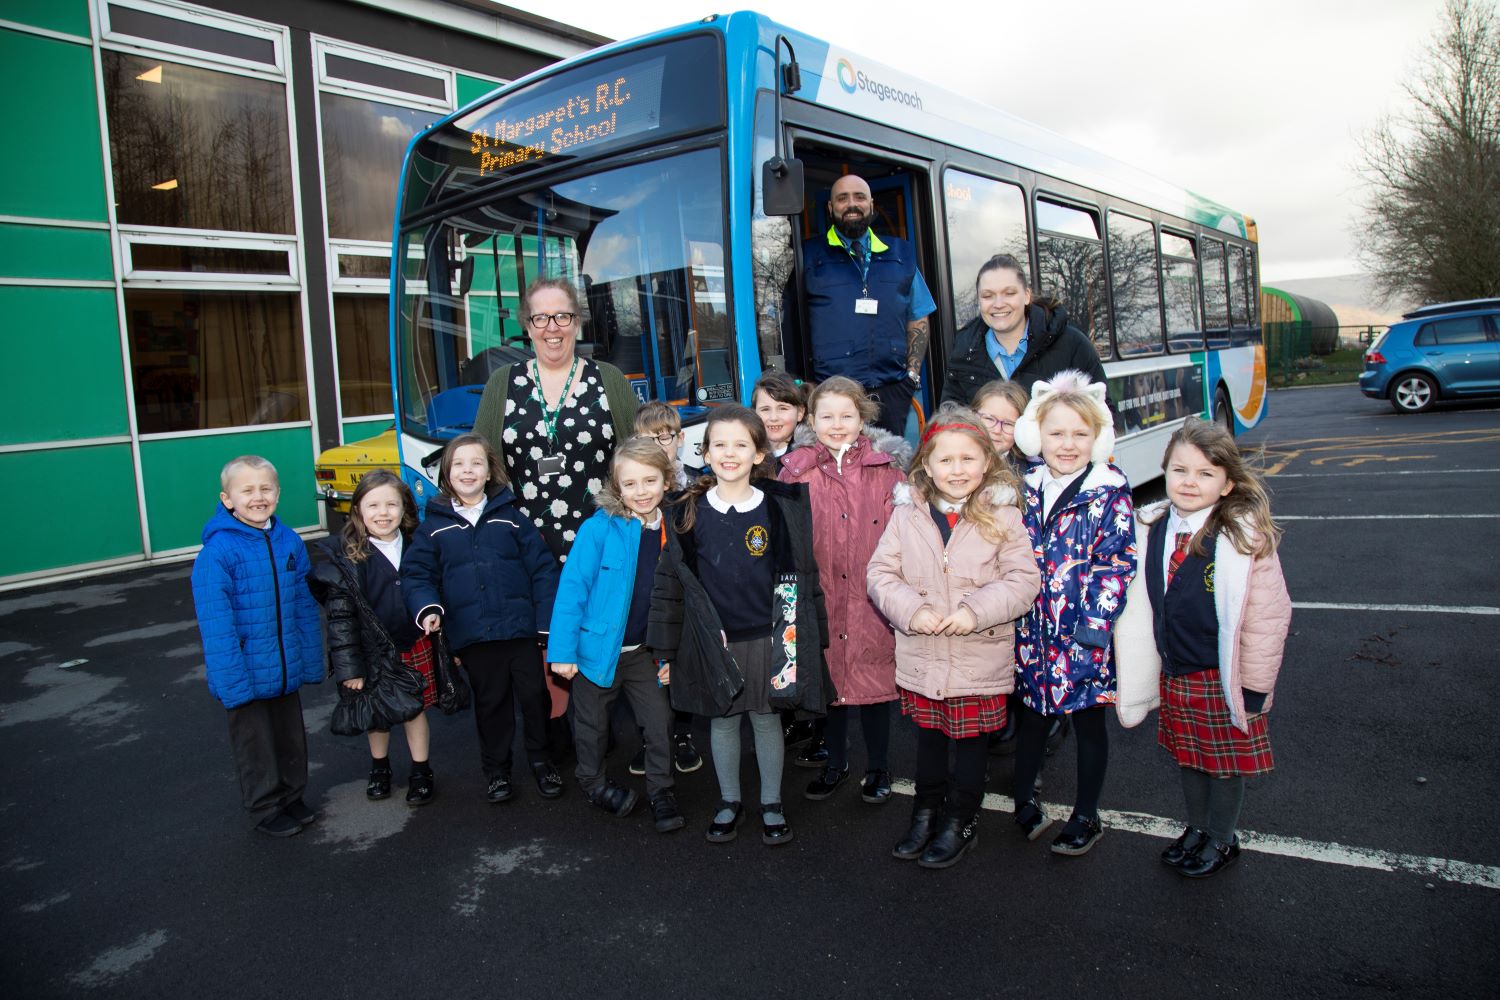 Stagecoach Manchester school visit